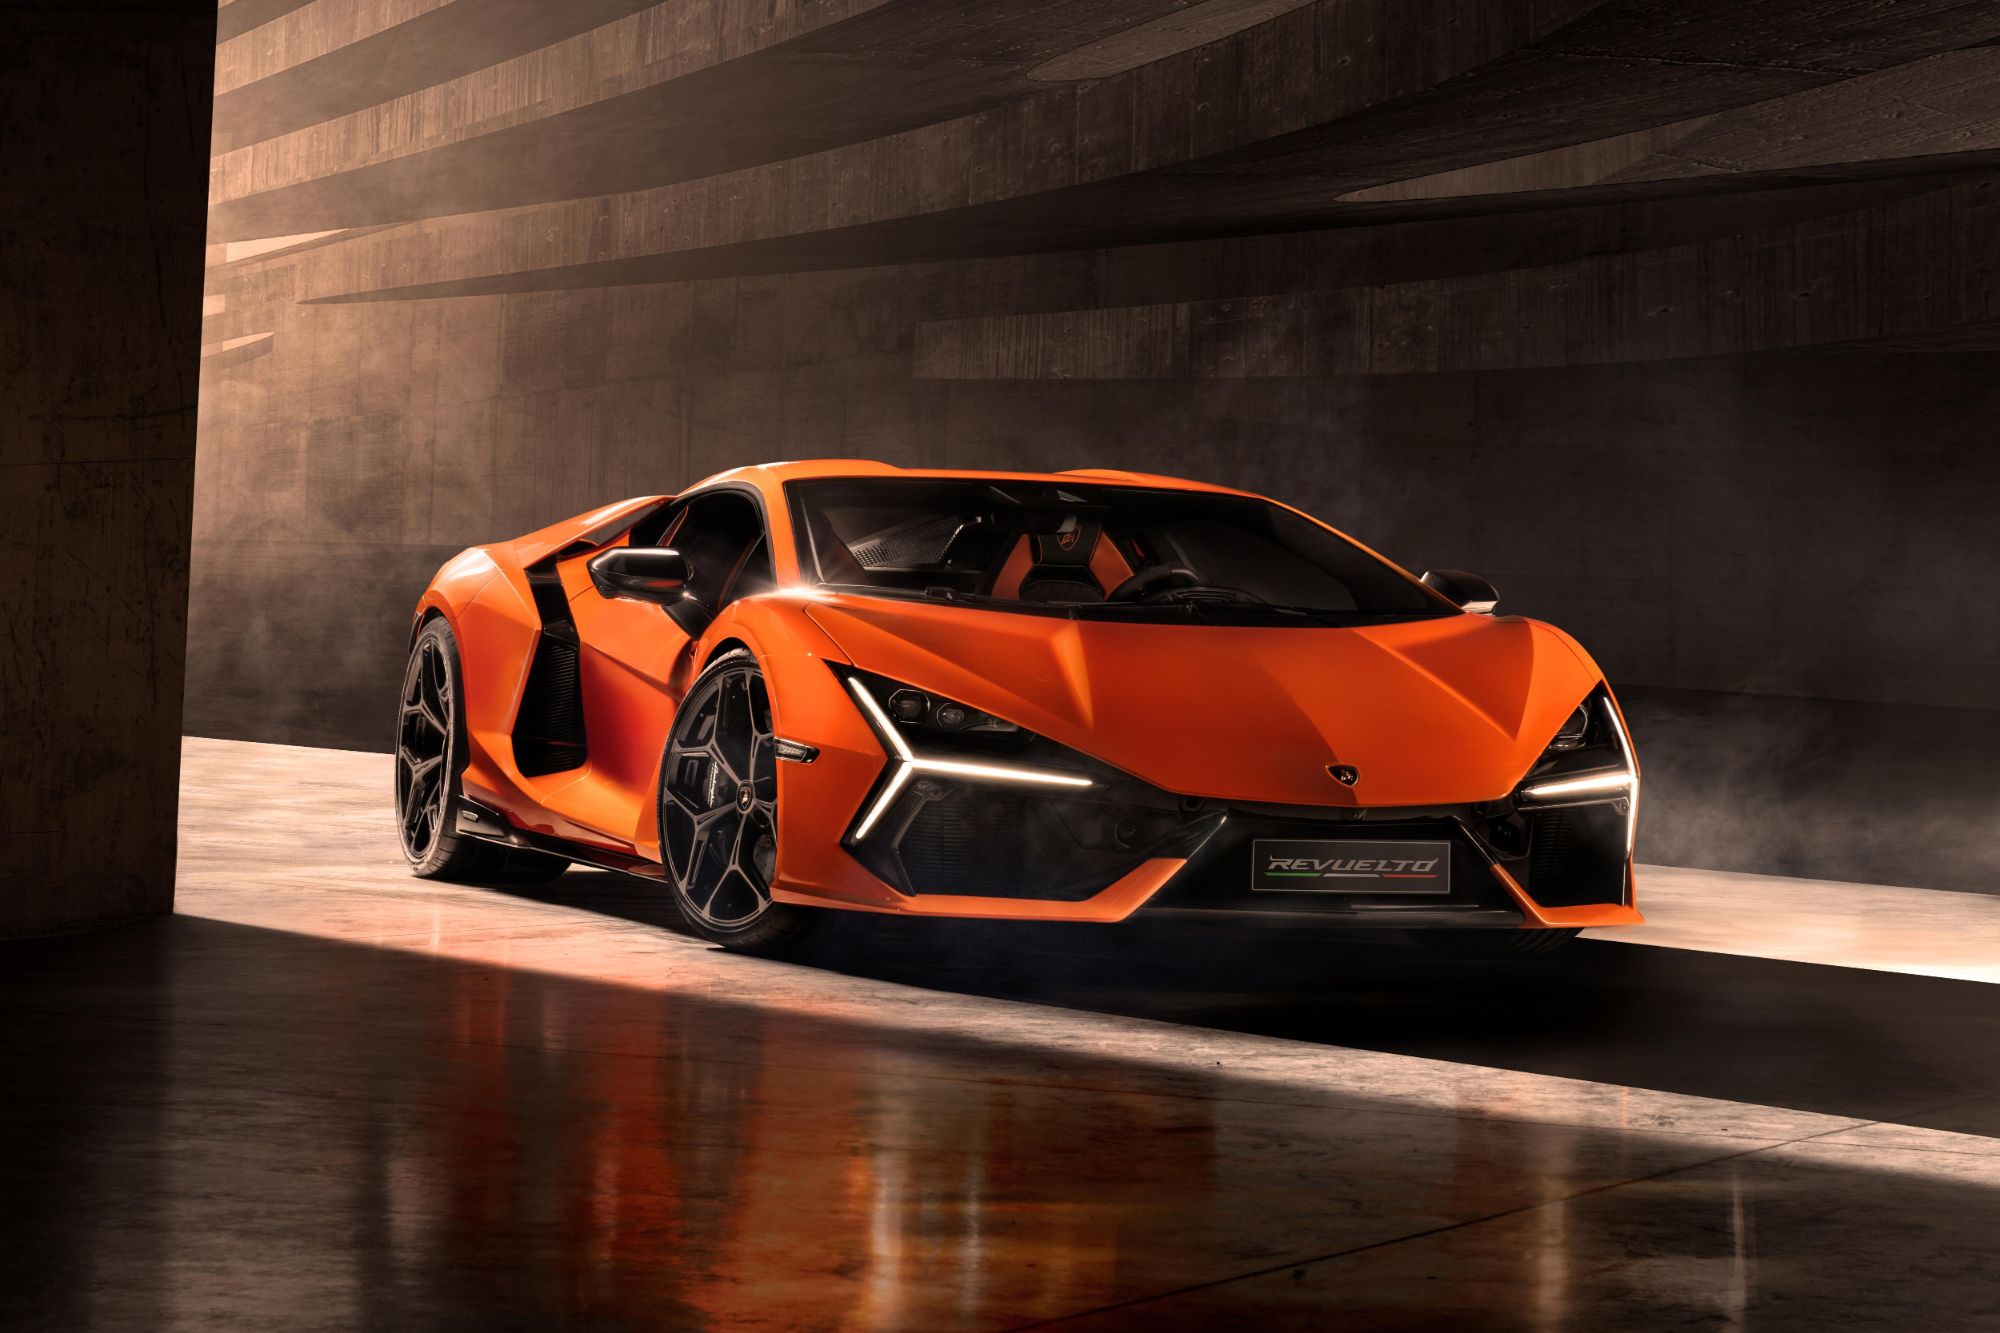 Lamborghini Revuelto 1 Lamborghini chính thức ra mắt siêu xe thể thao V12 hybrid HPEV đầu tiên của thương hiệu